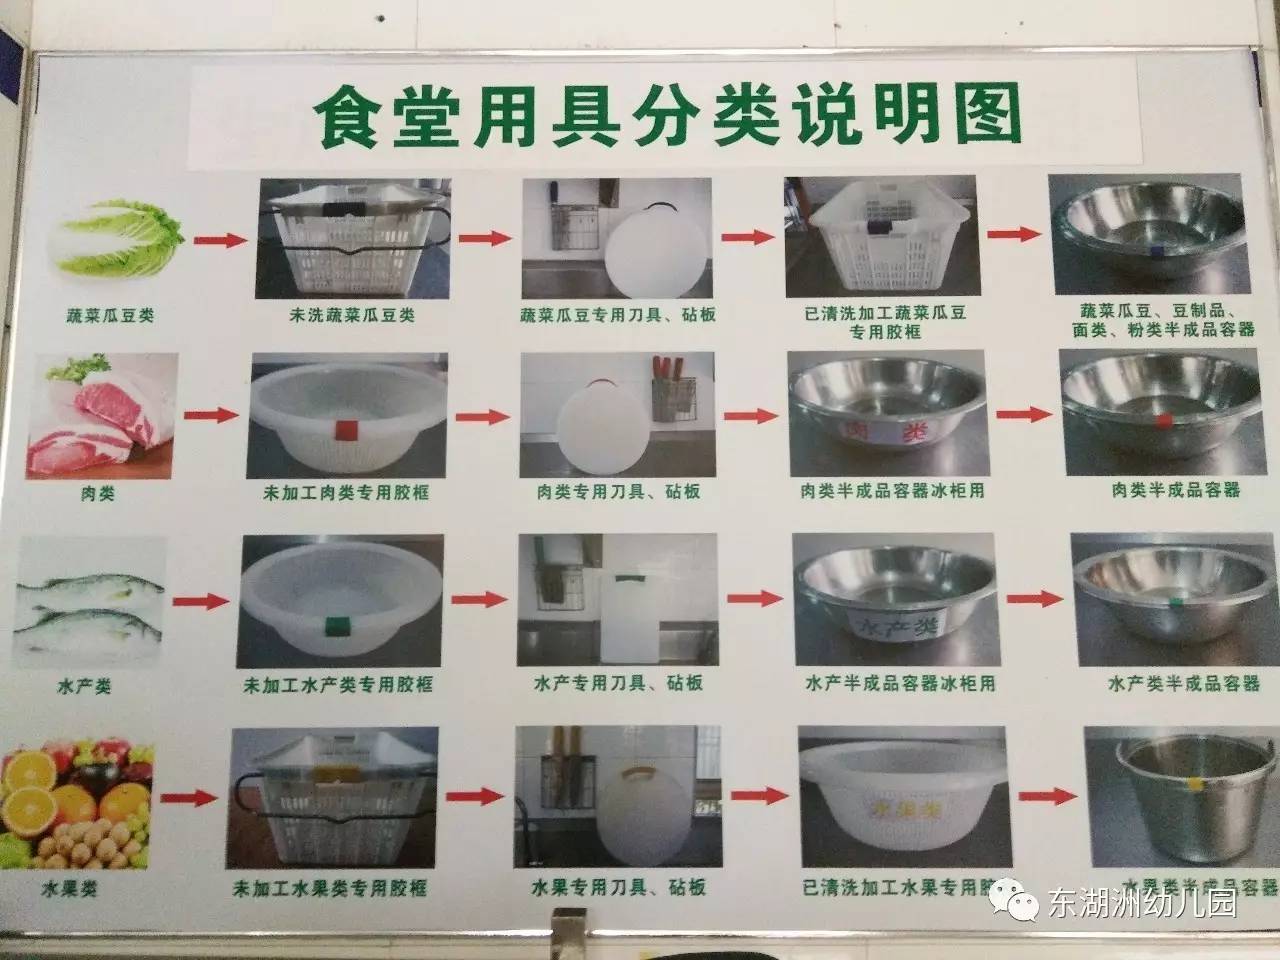 厨房收货标准照片表示图片